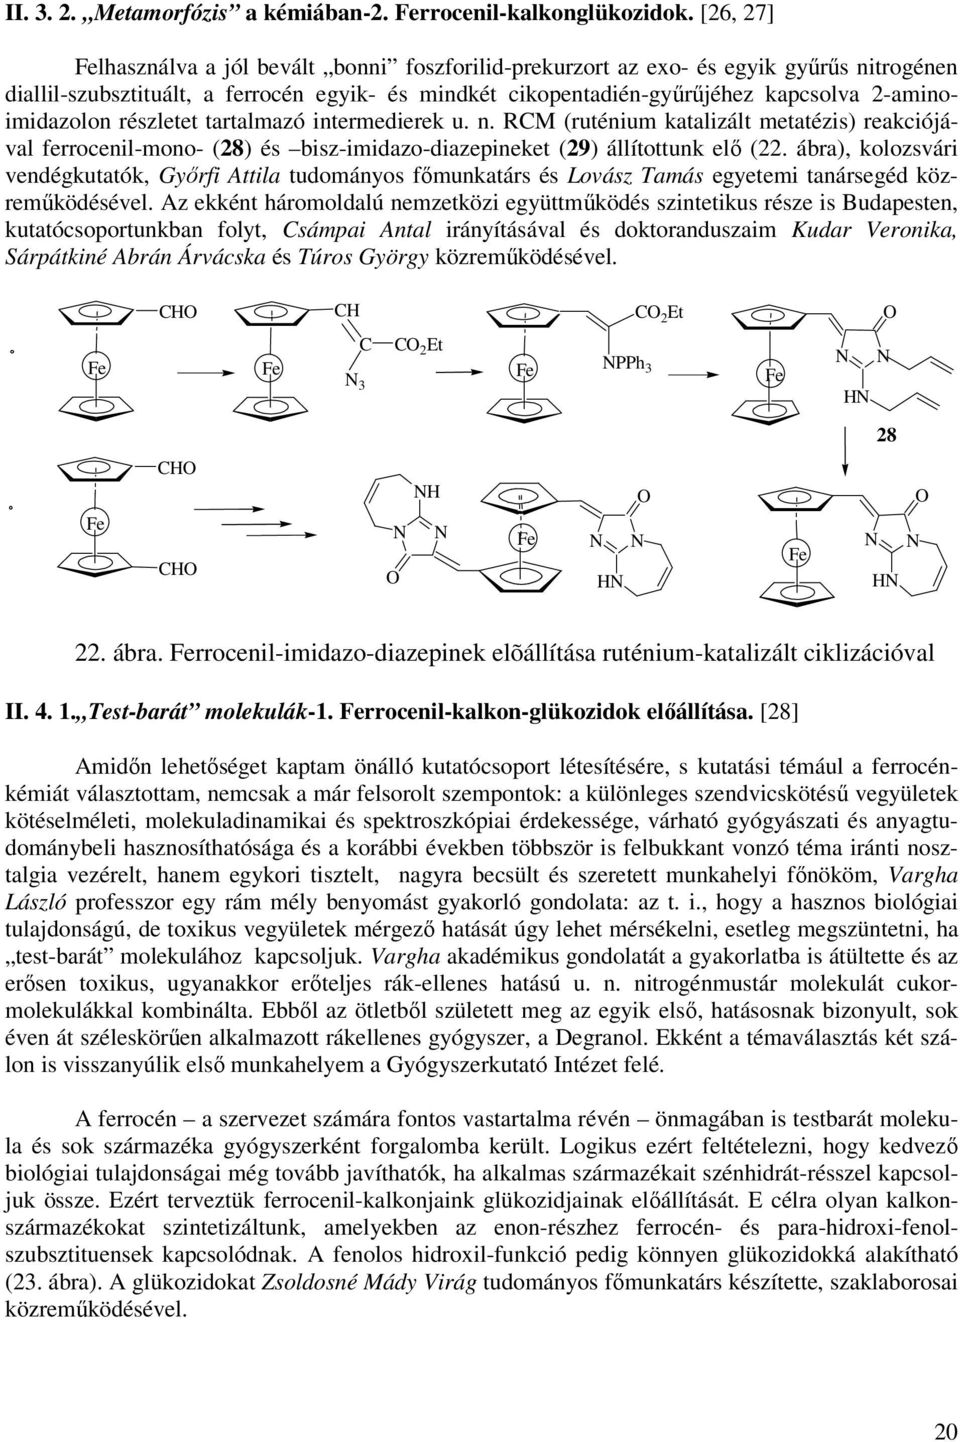 2-aminoimidazolon részletet tartalmazó intermedierek u. n. M (ruténium katalizált metatézis) reakciójával ferrocenil-mono- (28) és bisz-imidazo-diazepineket (29) állítottunk elő (22.